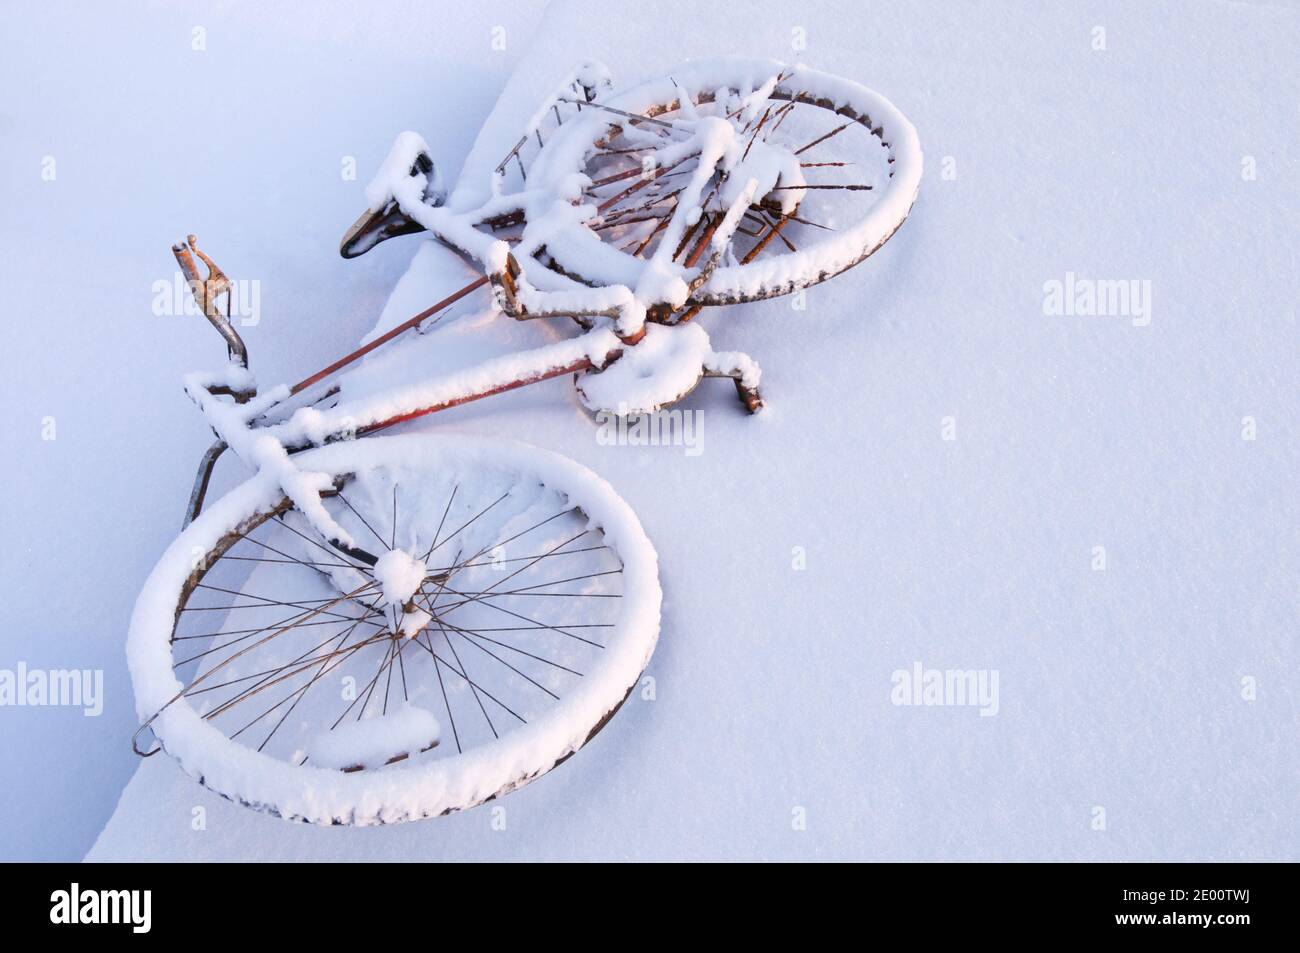 Vieux vélo rouillé recouvert de neige Banque D'Images